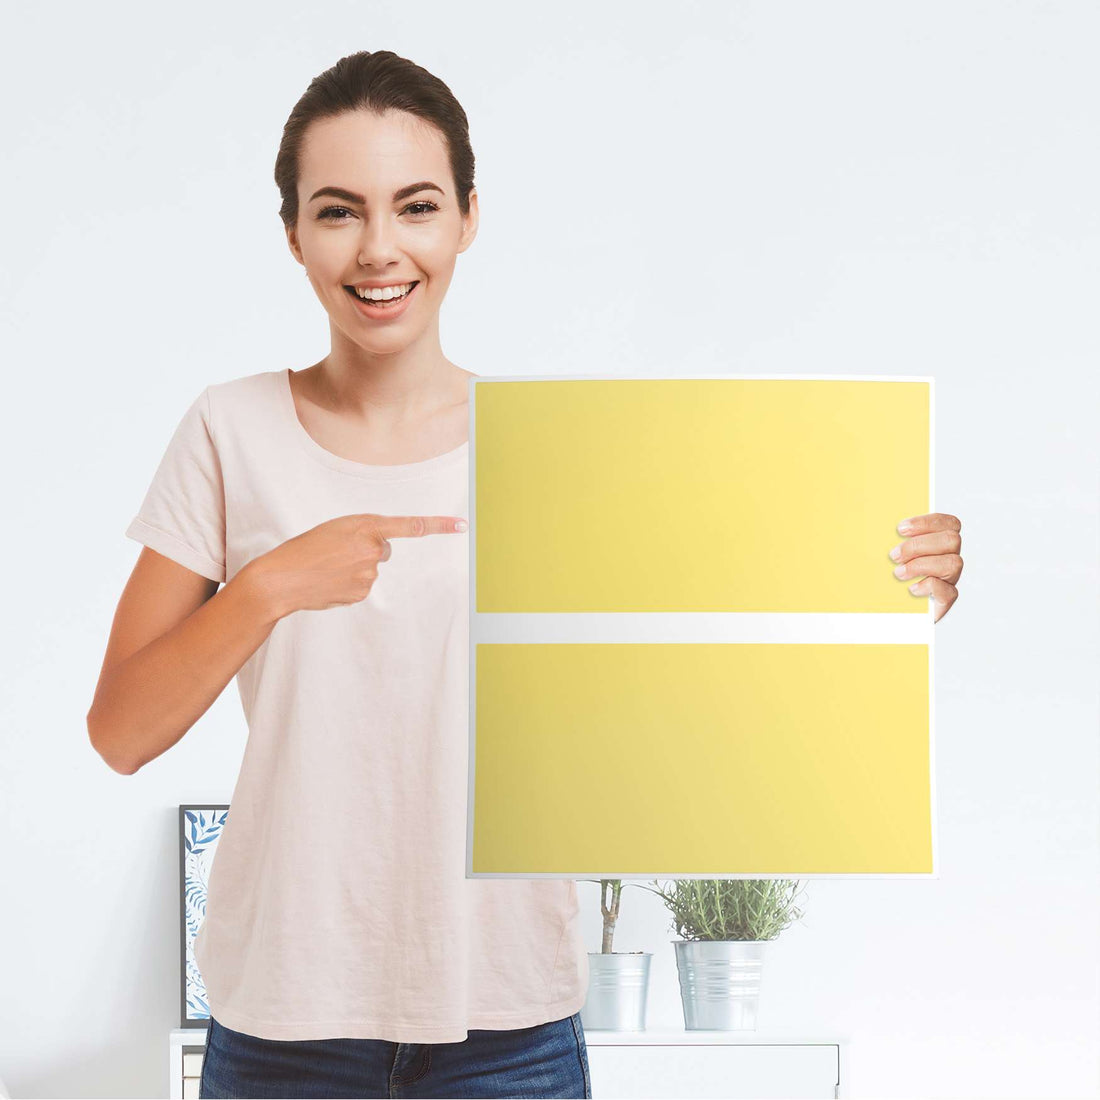 Möbelfolie Gelb Light - IKEA Malm Kommode 2 Schubladen - Folie